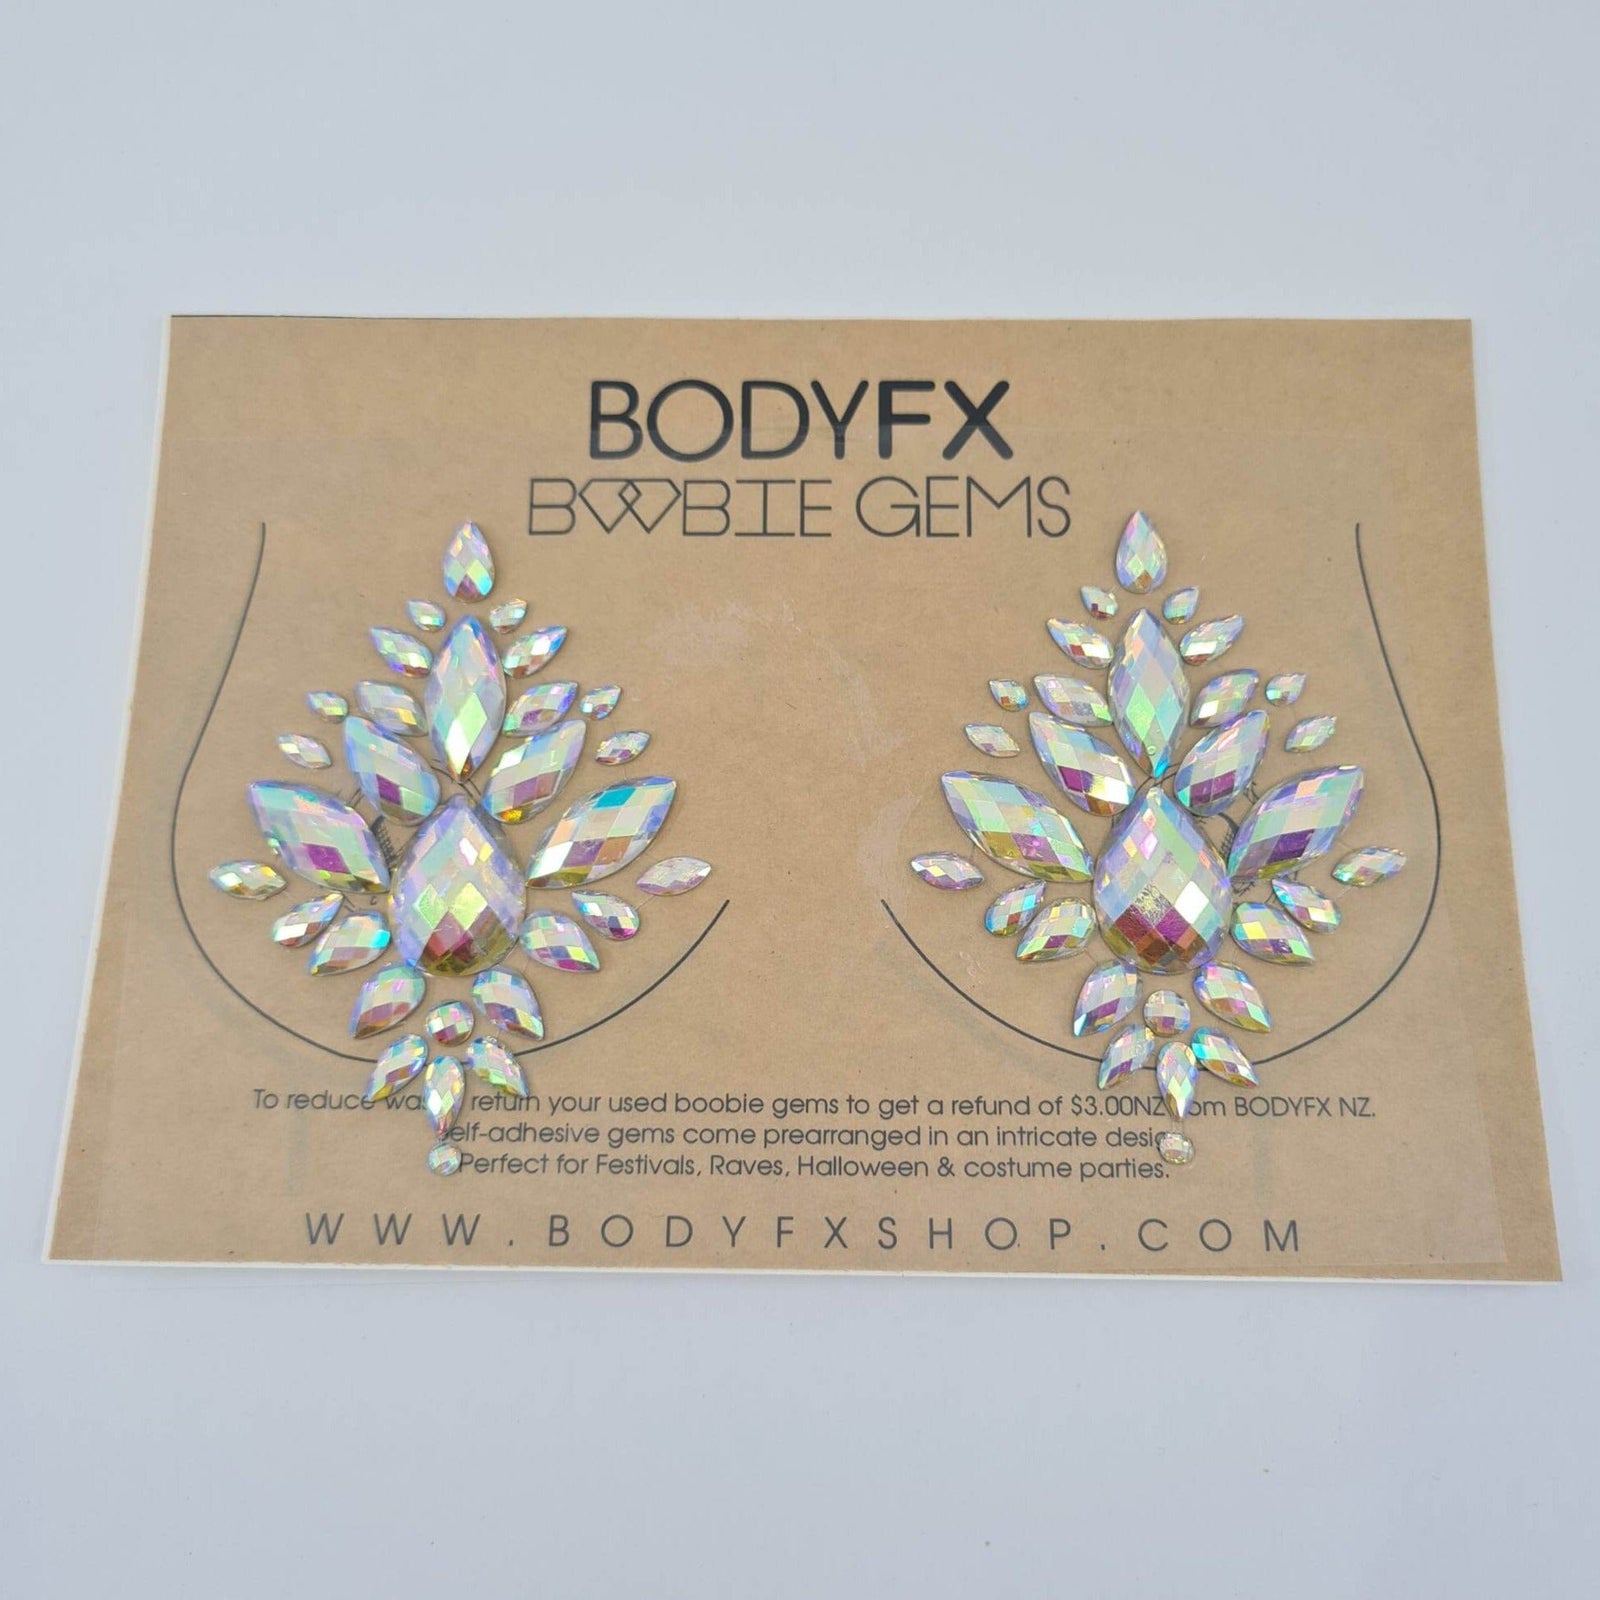 BODYFX Face Gems - Gold Empress